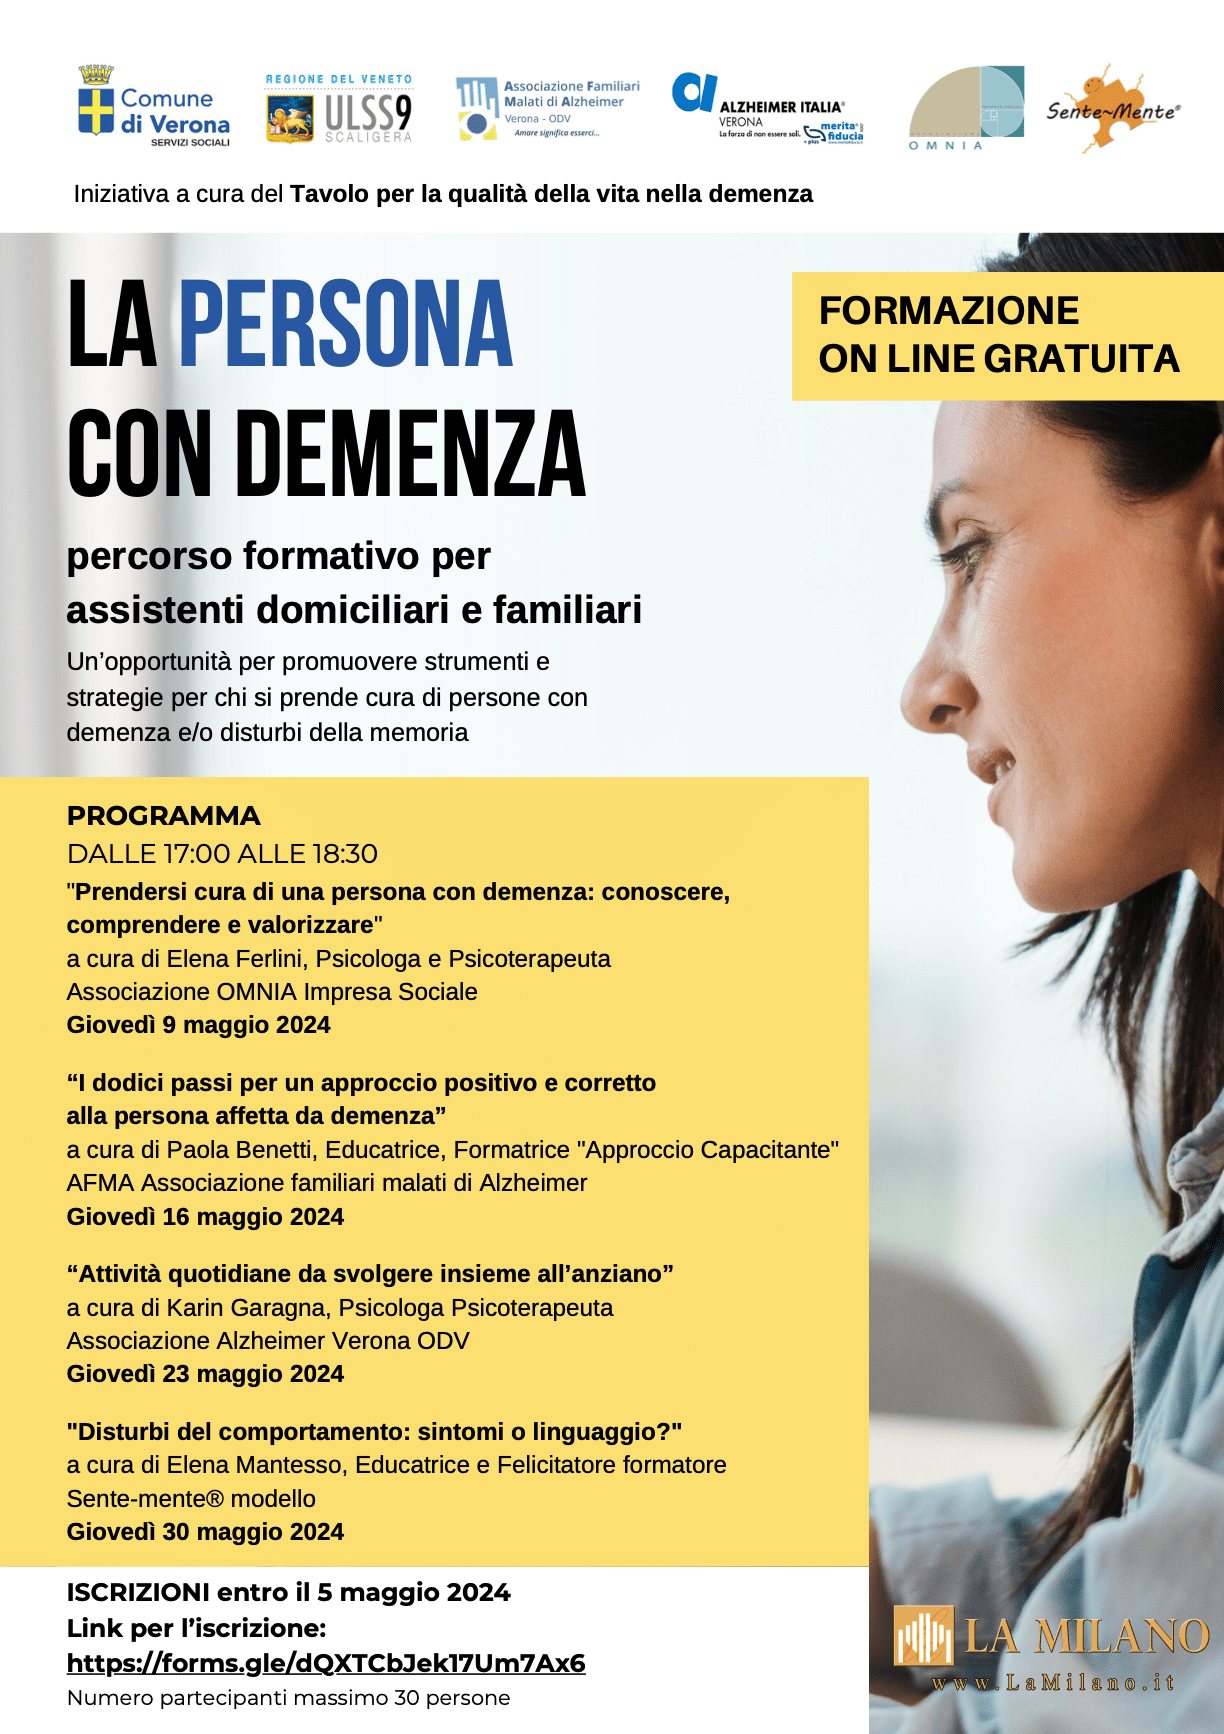 Verona. Al via i corsi online gratuiti promossi dal Comune per assistenza alle persone affette da demenza. 